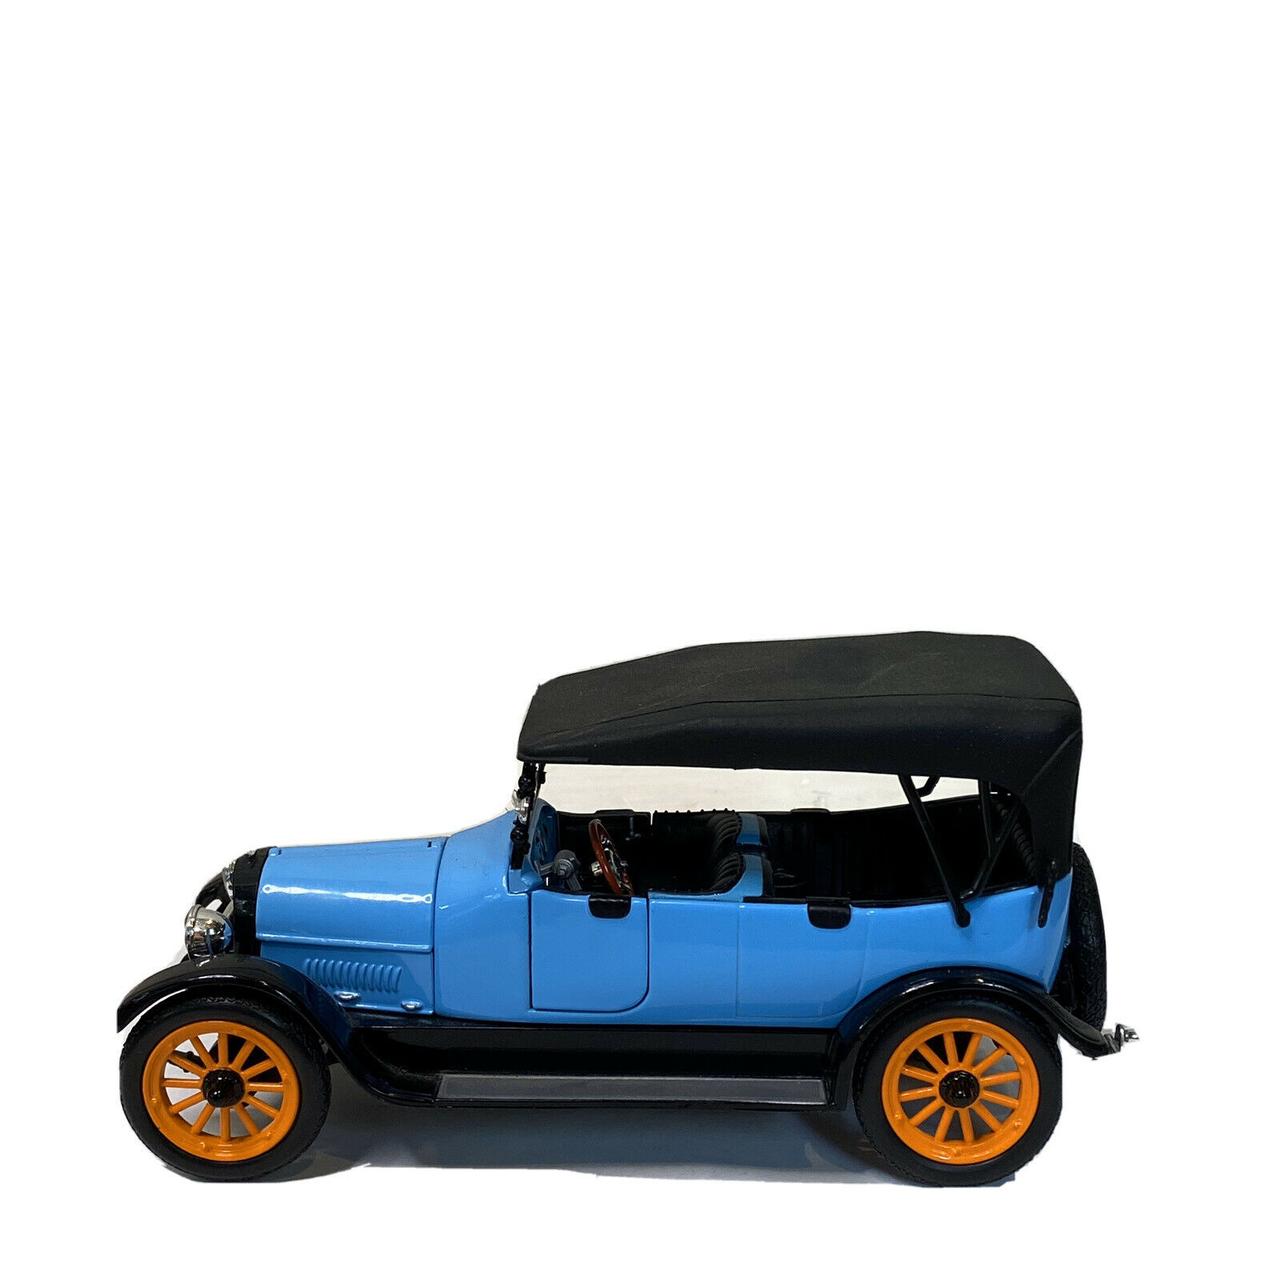 1/18 Signature Коллекционная модель REO Touring, 1917 года